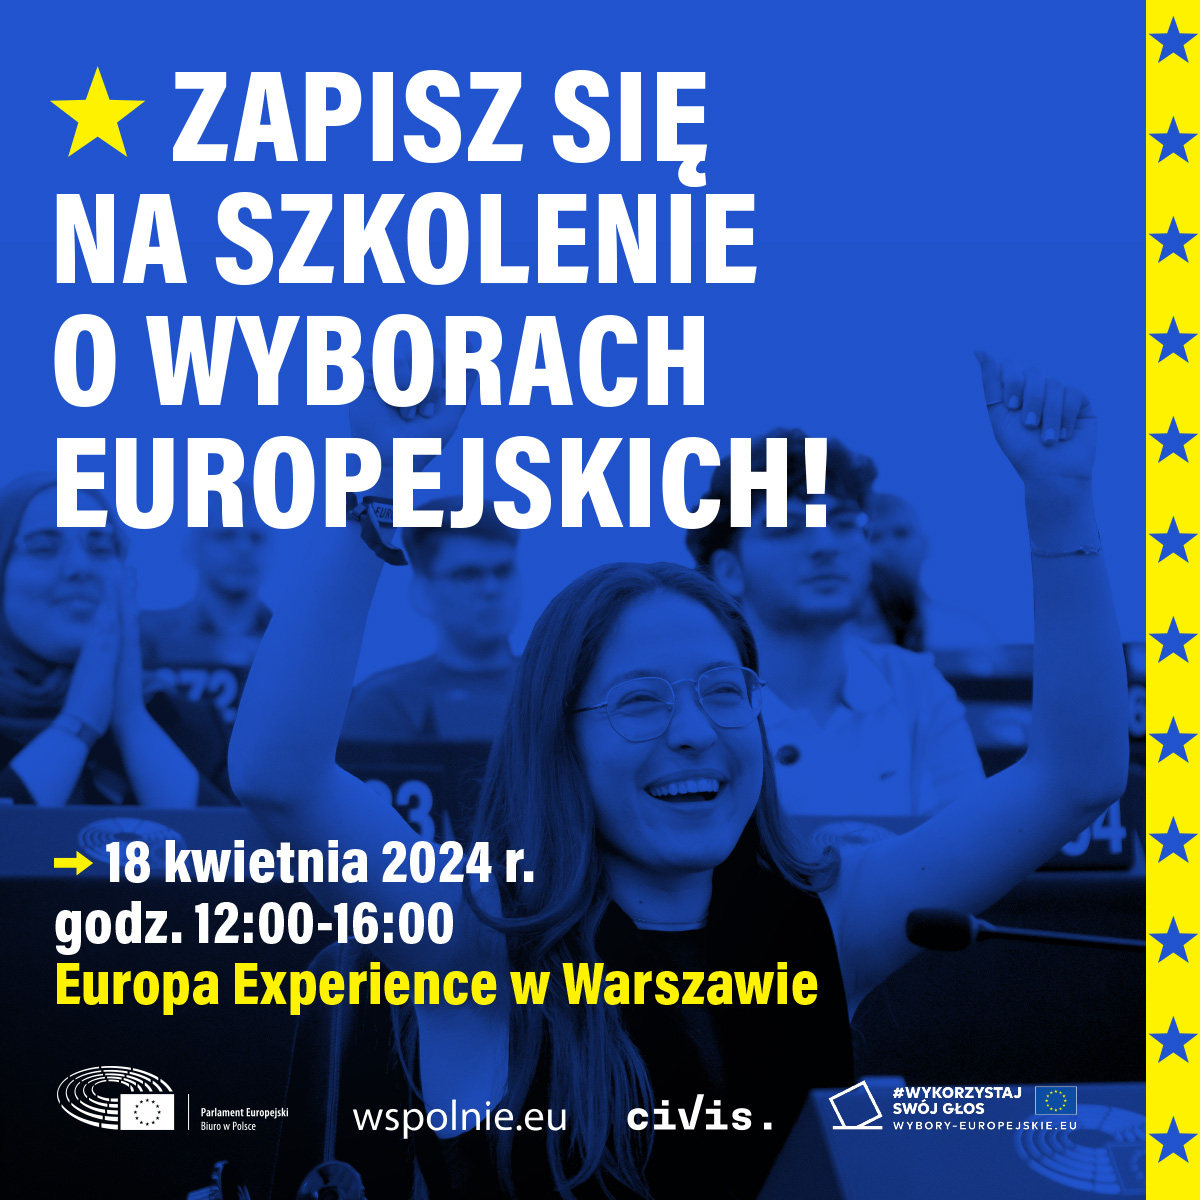 🚨🇪🇺  Już 18 kwietnia zapraszamy na szkolenie na temat #wyboryeuropejskie2024 dla młodzieży ze społeczności #wspolnieeu! Szkolenie odbędzie się w centrum Europa Experience - Spotkania z Europą w Warszawie.

🔔 Szczegóły i REJESTRACJA: wspolnie.eu/pl/event/warsz…

#WykorzystajSwójGłos